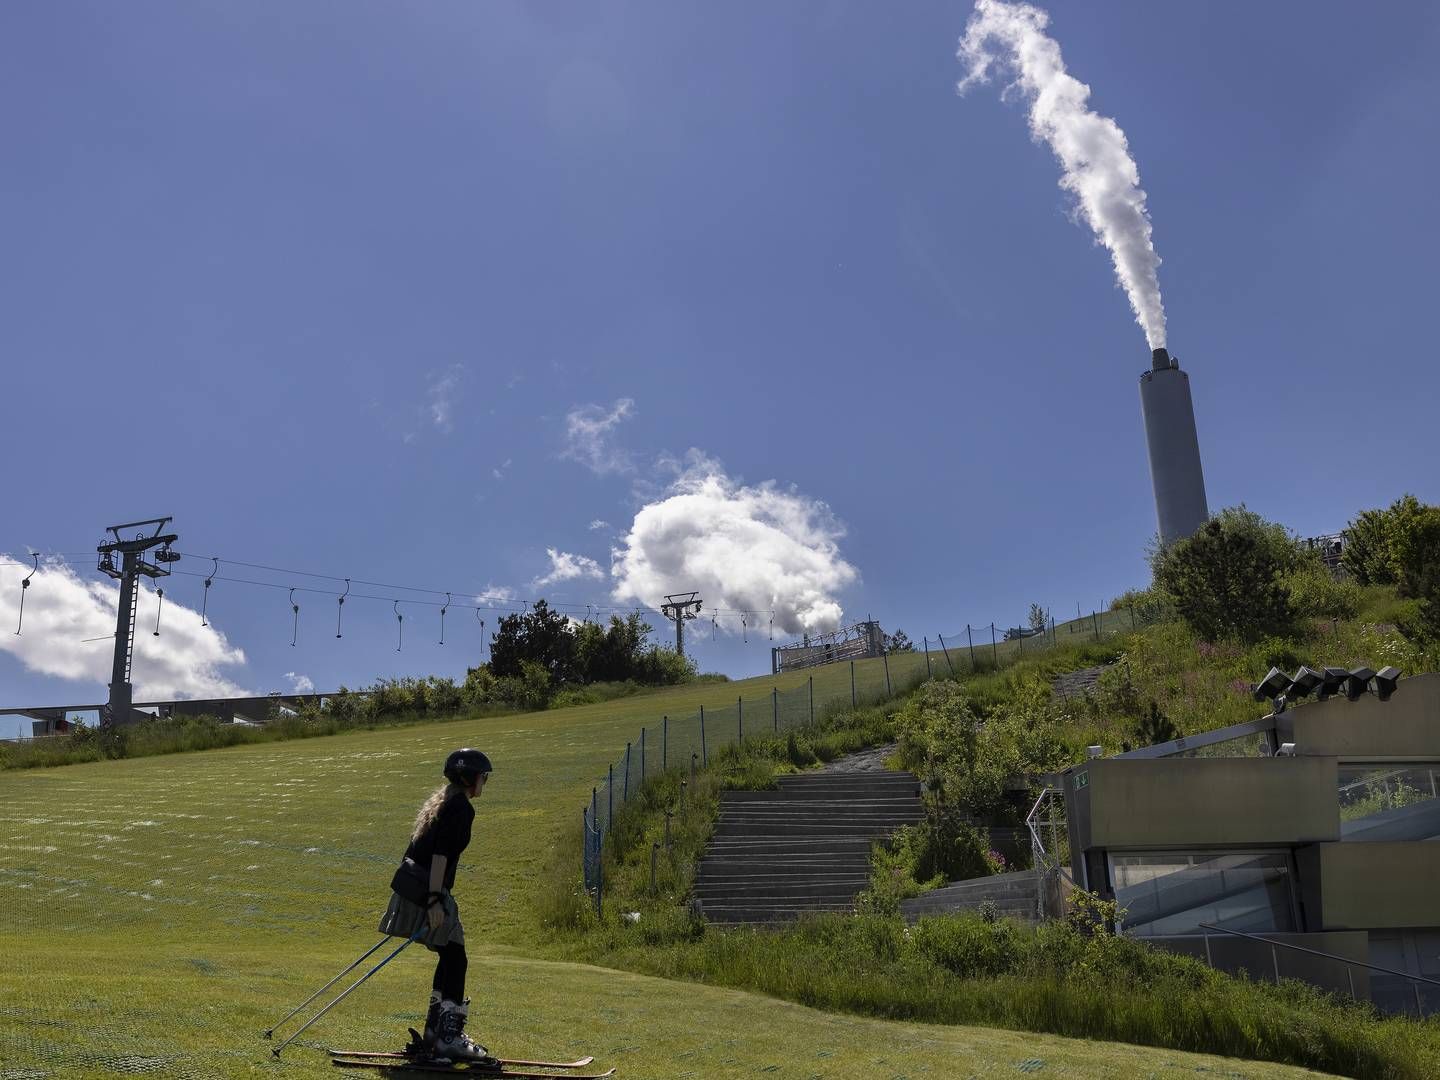 Hos ARC håber man i fremtiden at kunne fange 500.000 ton CO2 pr. år. | Foto: Thomas Borberg